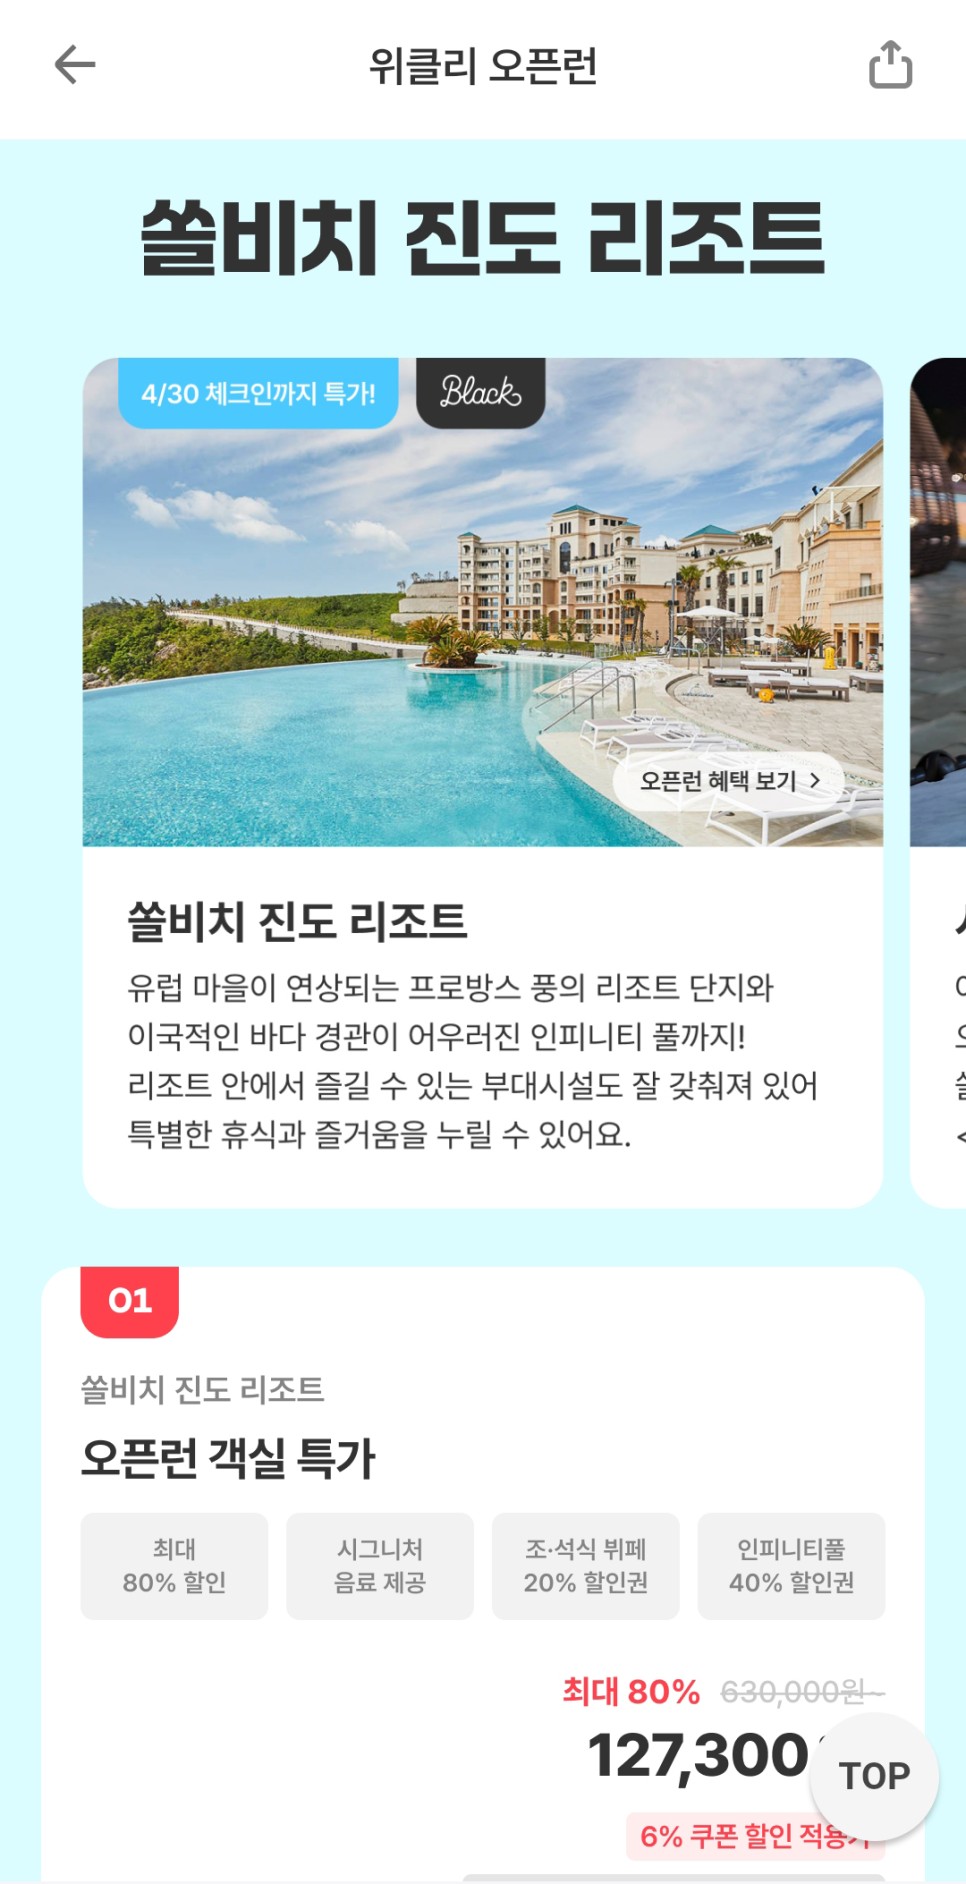 진도쏠비치 리조트 호텔 인피니티풀 수영장 맛집 식당 오픈런 최대 80% 특가